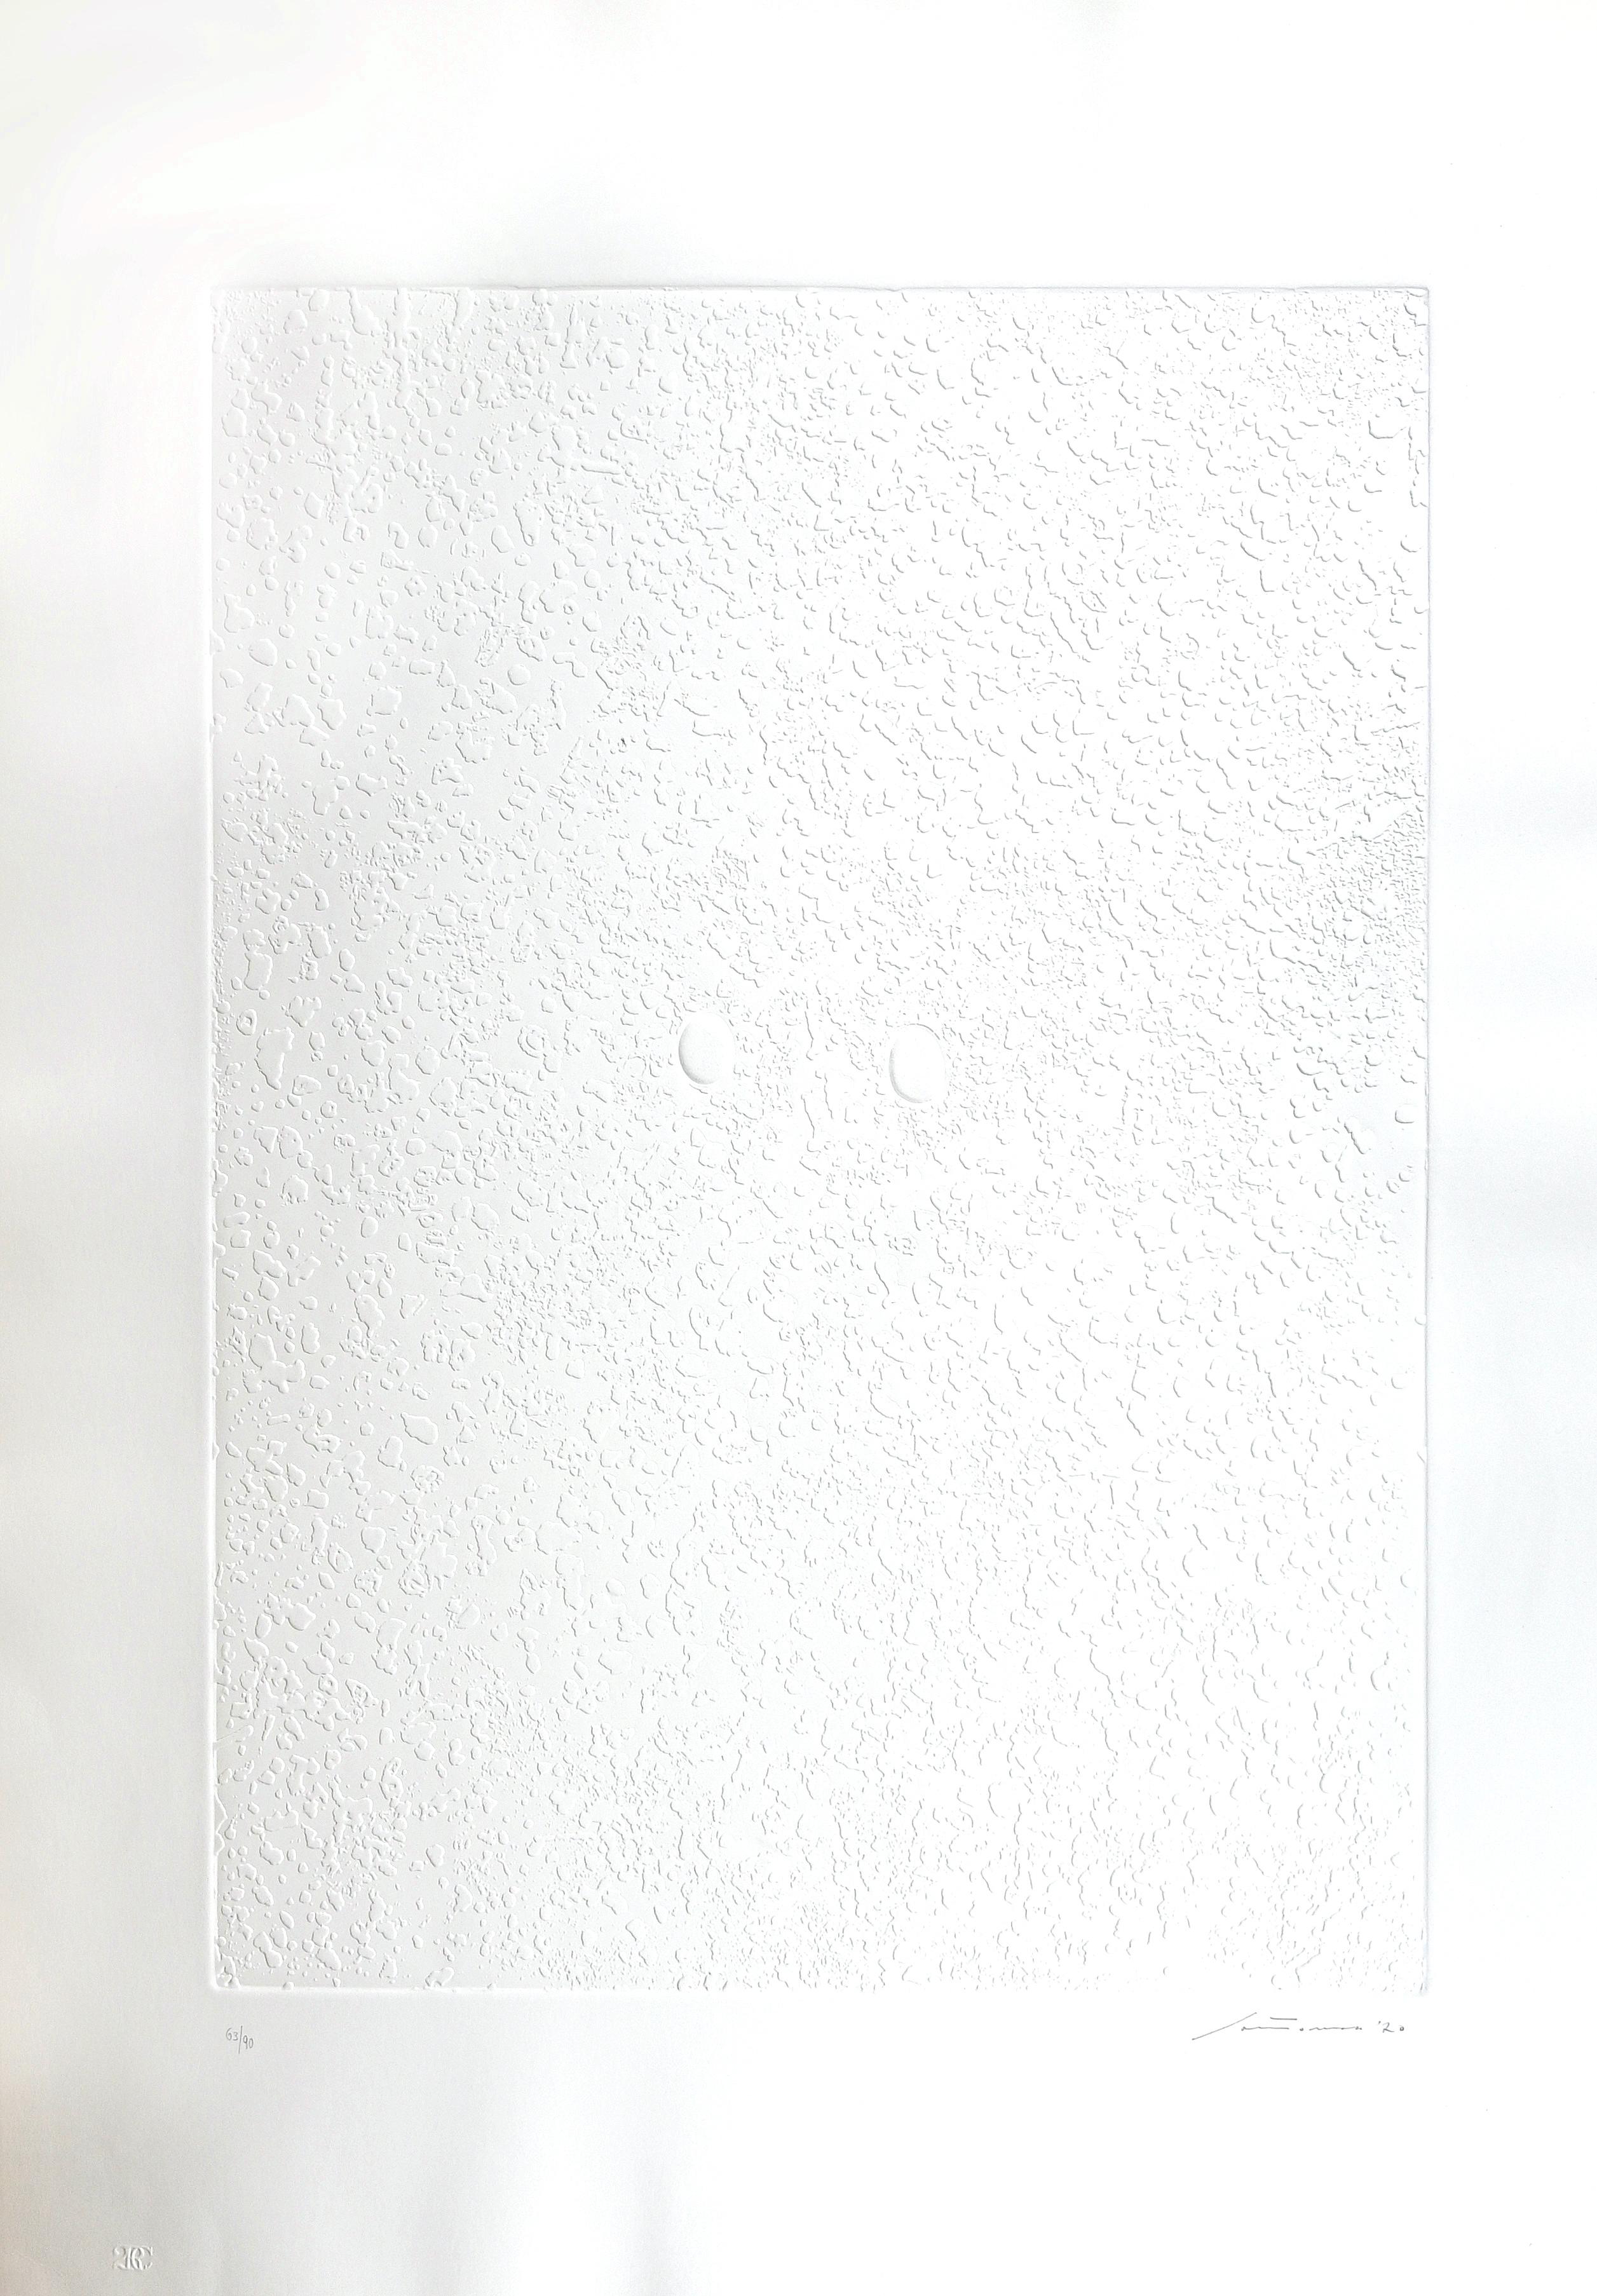 Monadi bianche est un résumé  œuvre d'art réalisée par Giuseppe Santomaso en 1970

Gravure blanche sur plaque de cuivre sur papier Fabriano Rosaspina.

Signé à la main et daté en bas à droite.

Numéroté en bas à gauche. Edition 63/90.

Imprimé et